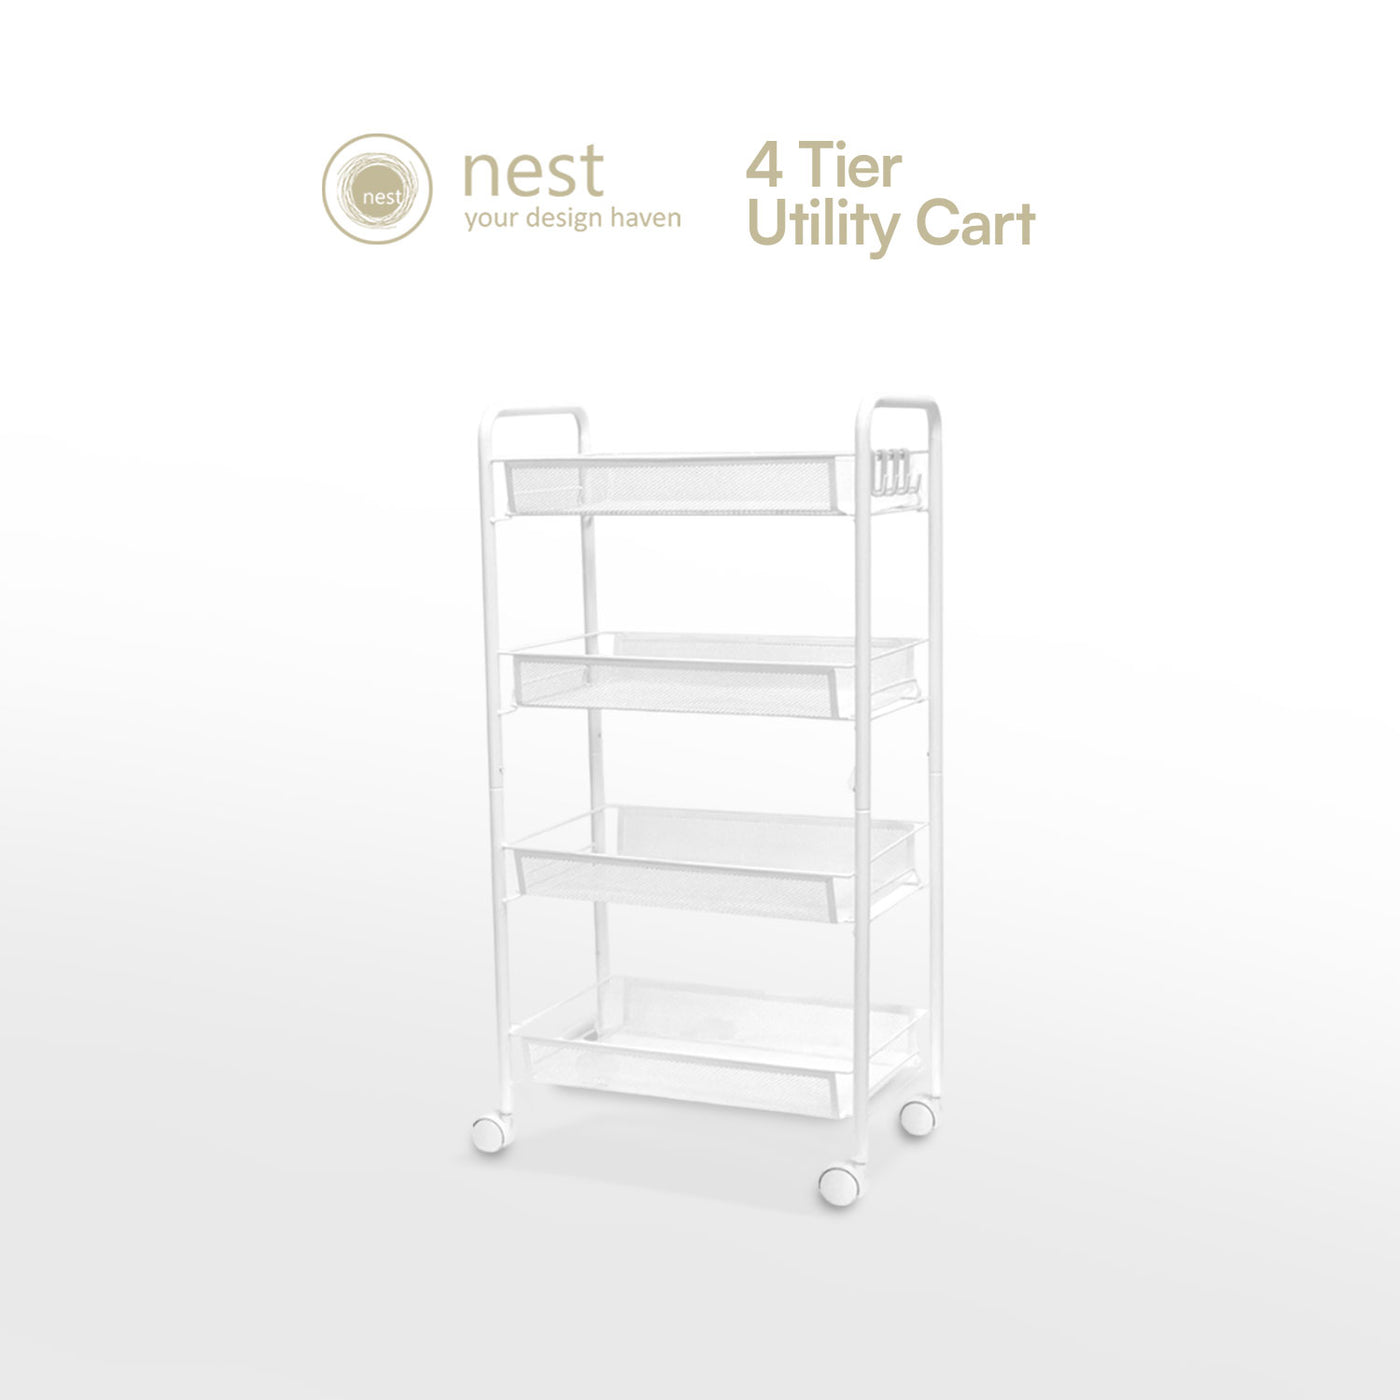 NEST DESIGN LAB 4 Multi-Tier Narrow Kitchen Storage Trolley Cart